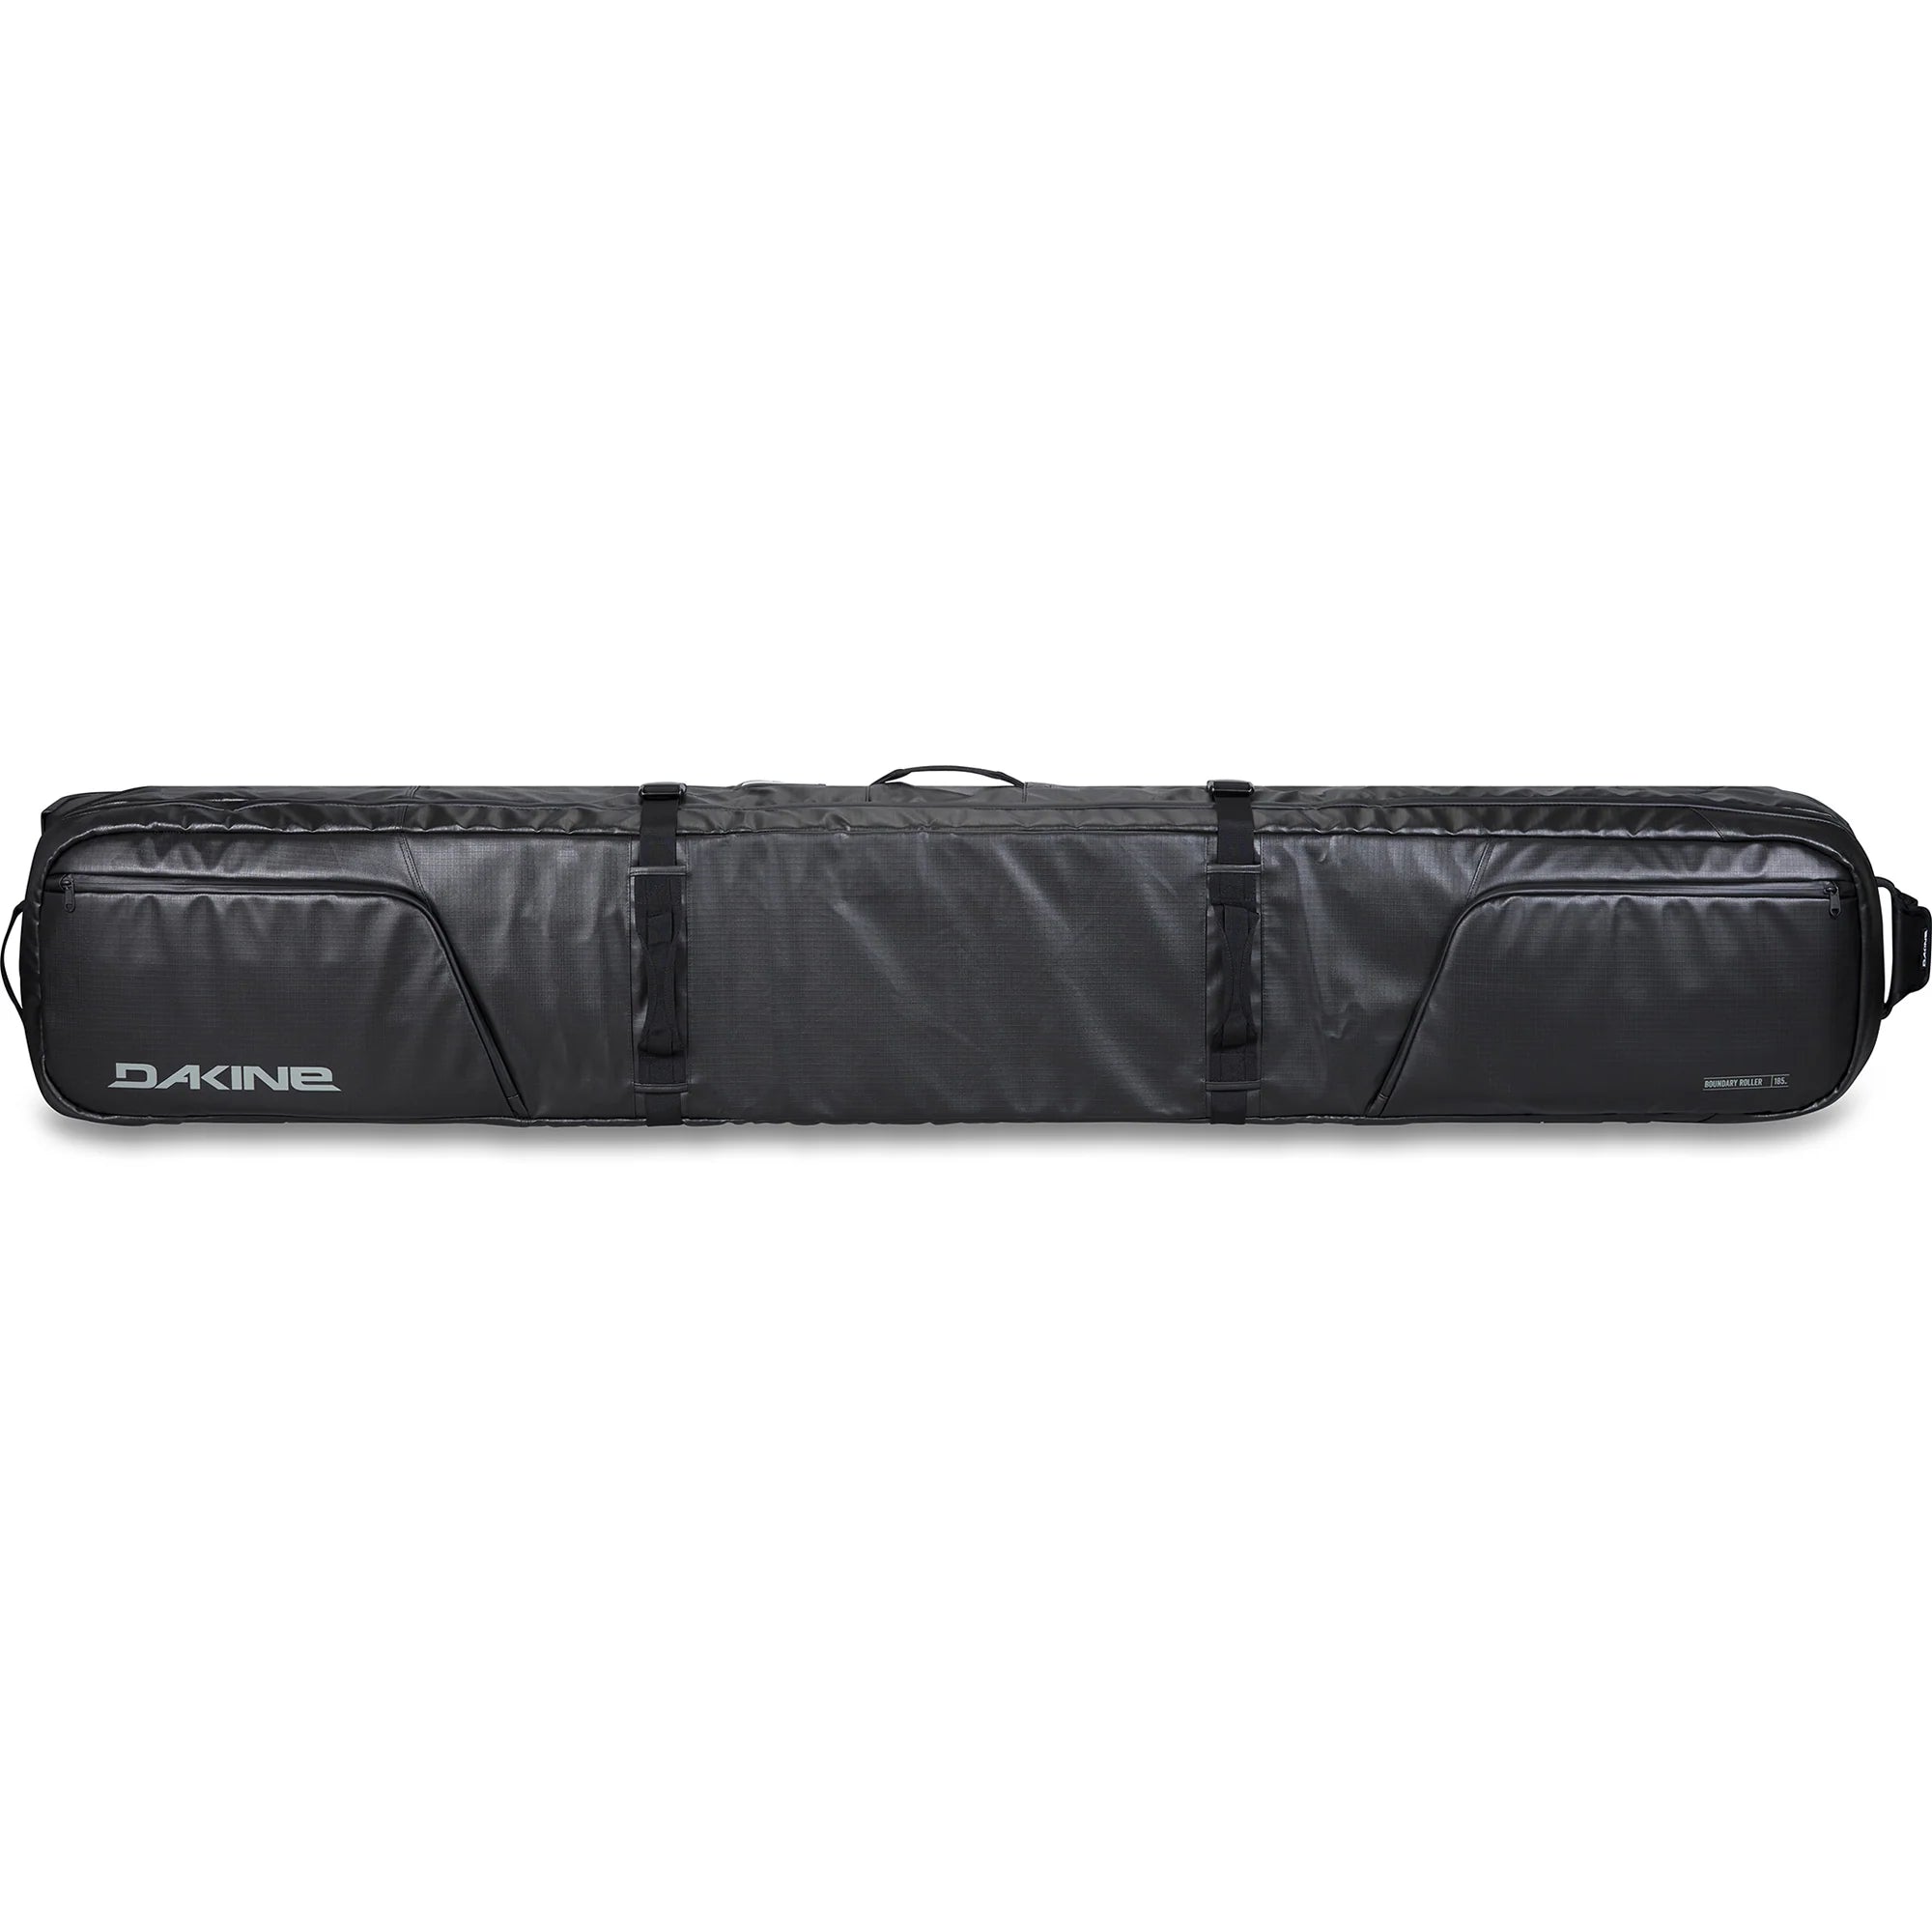 Dakine boundary ski roller bag - Black Coated - 185 cm Skitas - Reisartikelen-nl